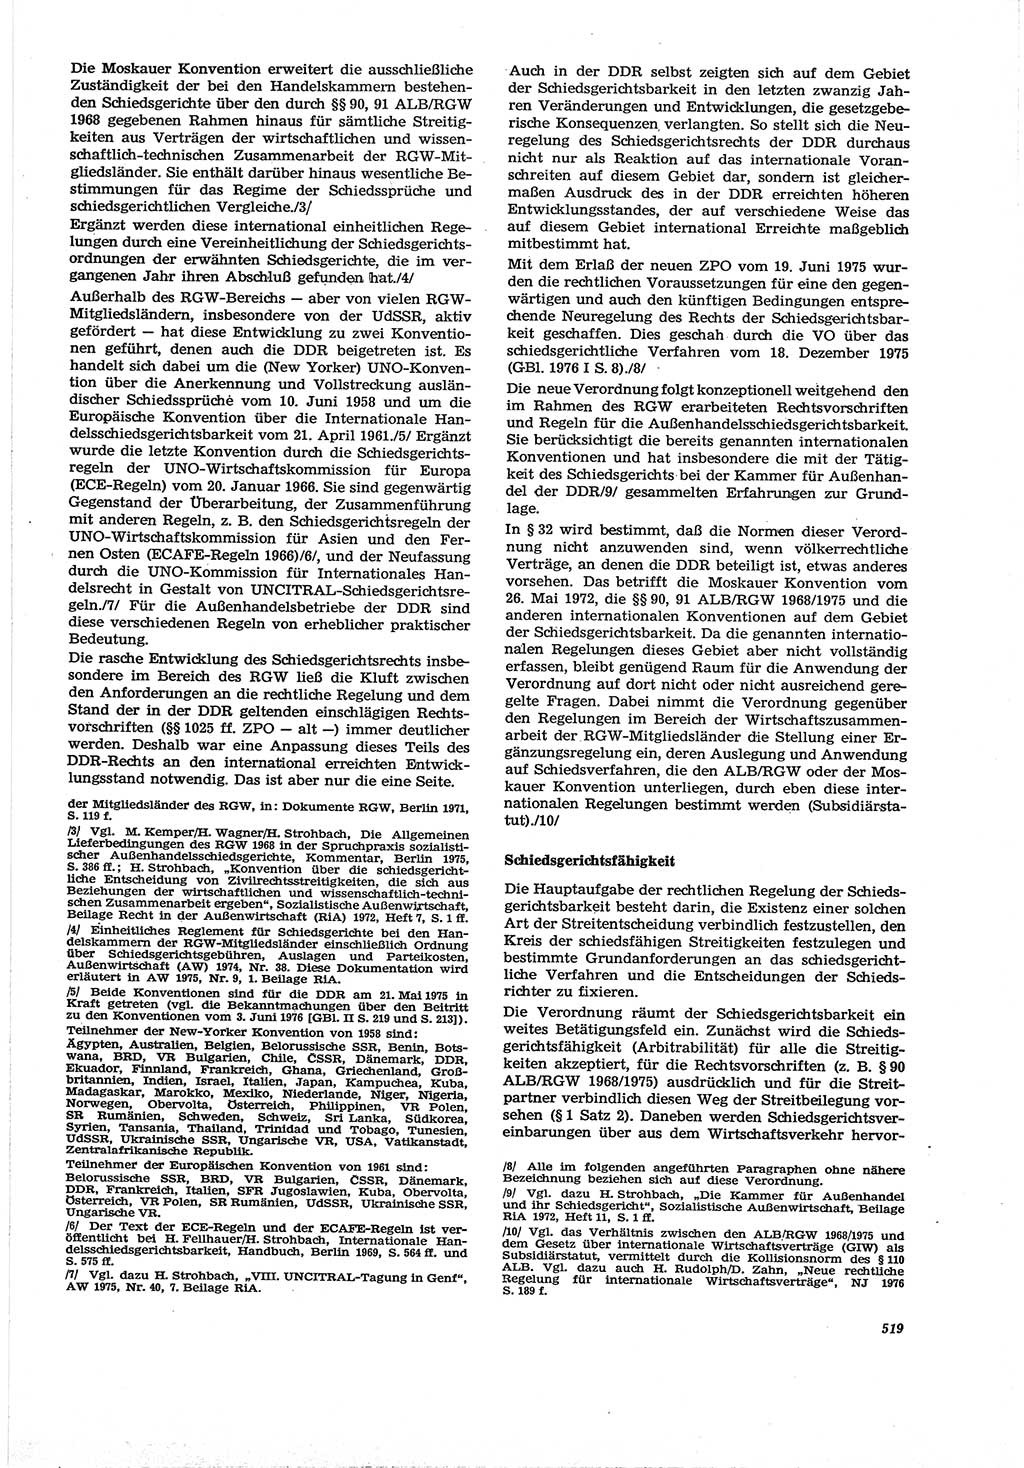 Neue Justiz (NJ), Zeitschrift für Recht und Rechtswissenschaft [Deutsche Demokratische Republik (DDR)], 30. Jahrgang 1976, Seite 519 (NJ DDR 1976, S. 519)